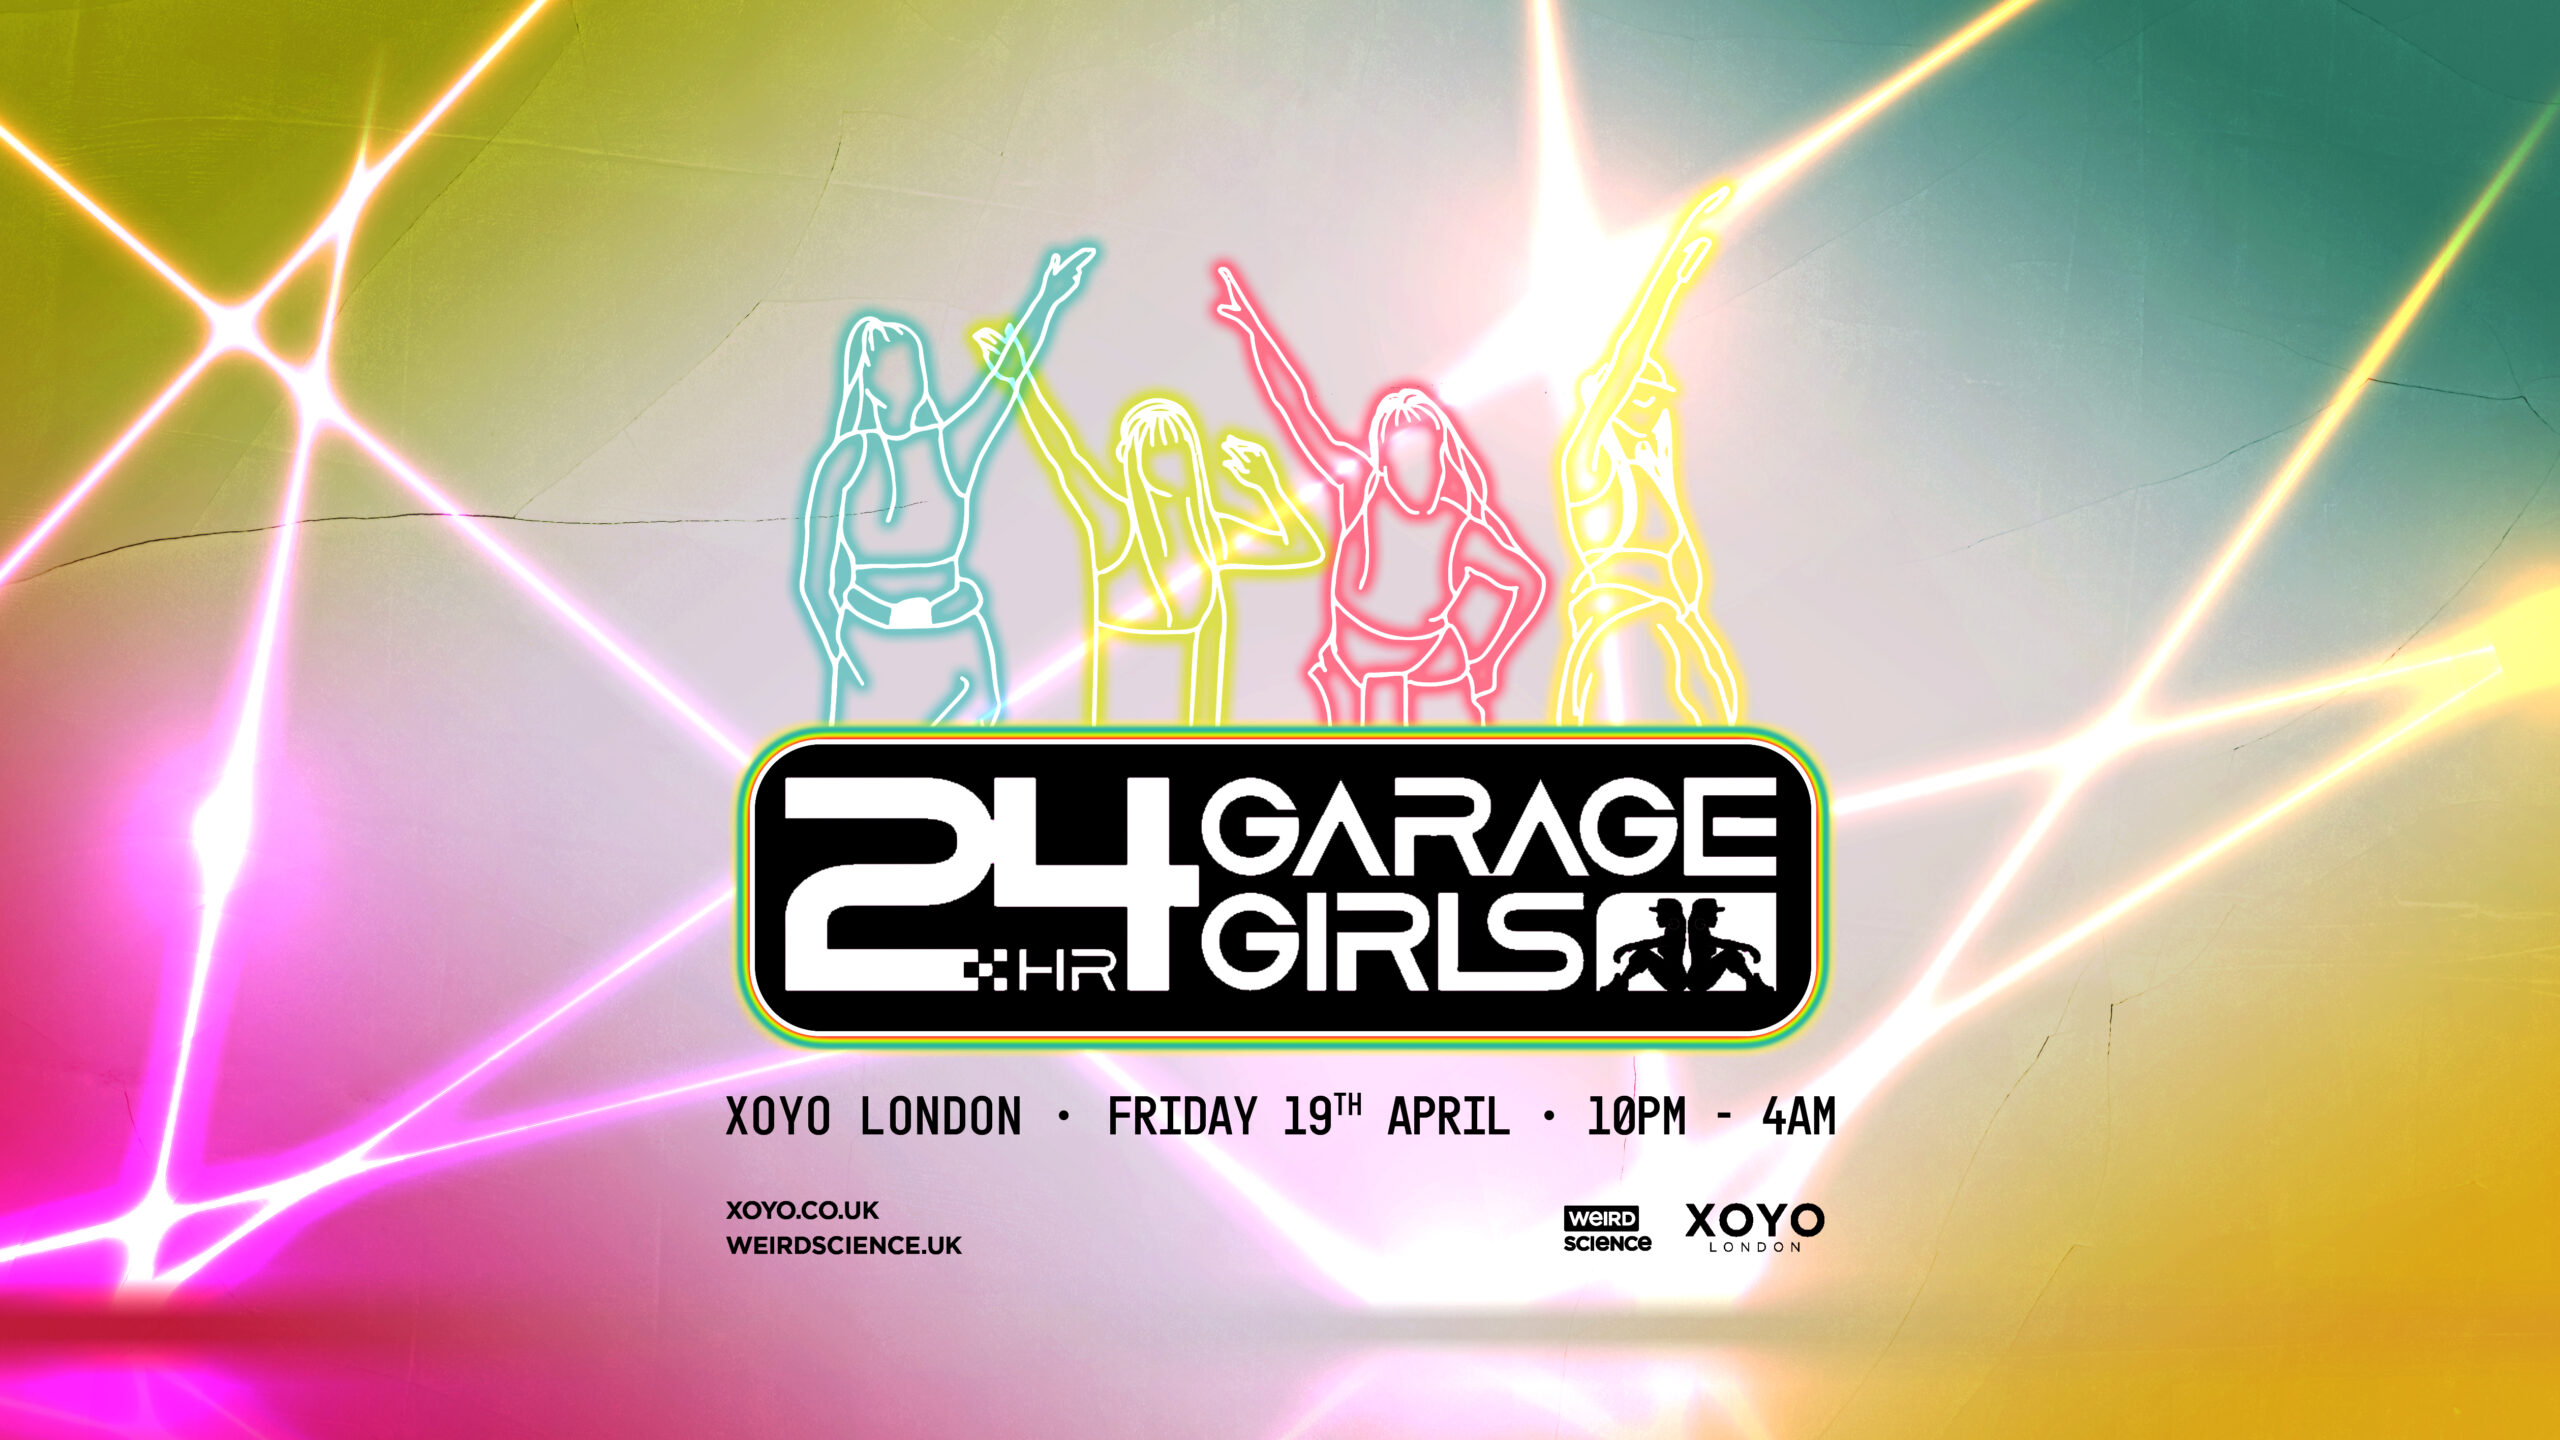 24HR Garage Girls return to XOYO London this April!